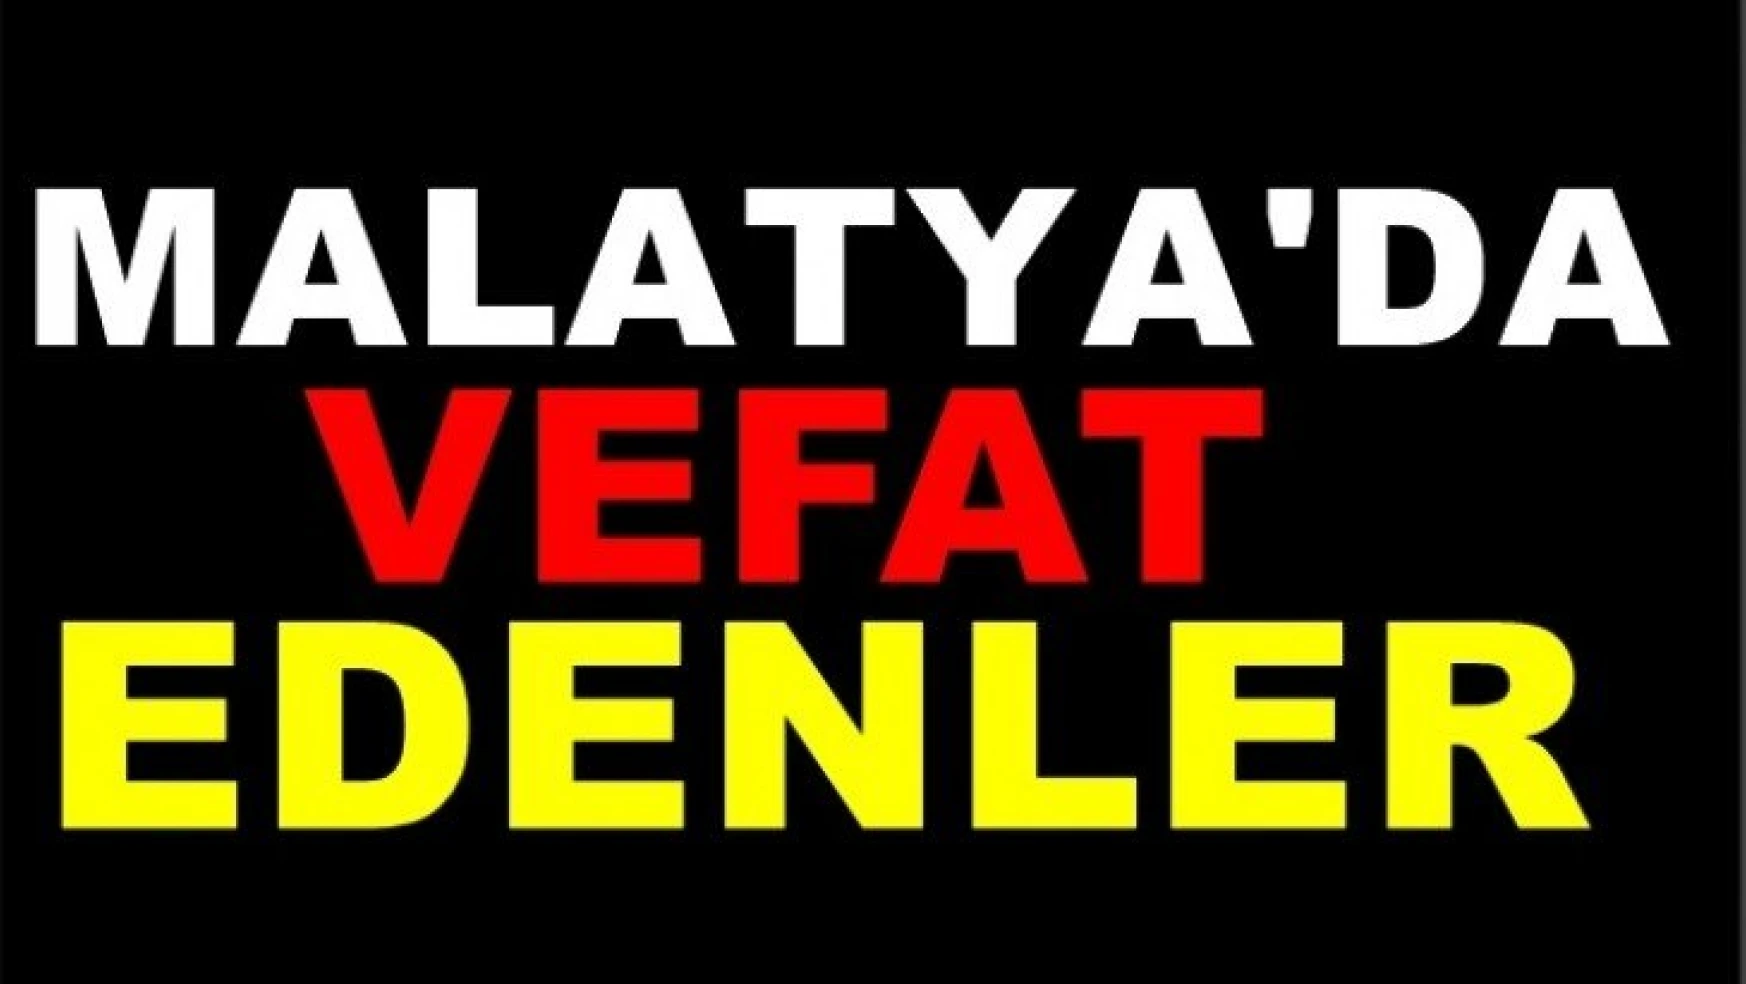 Malatya'da 11 Kişi Vefat etti